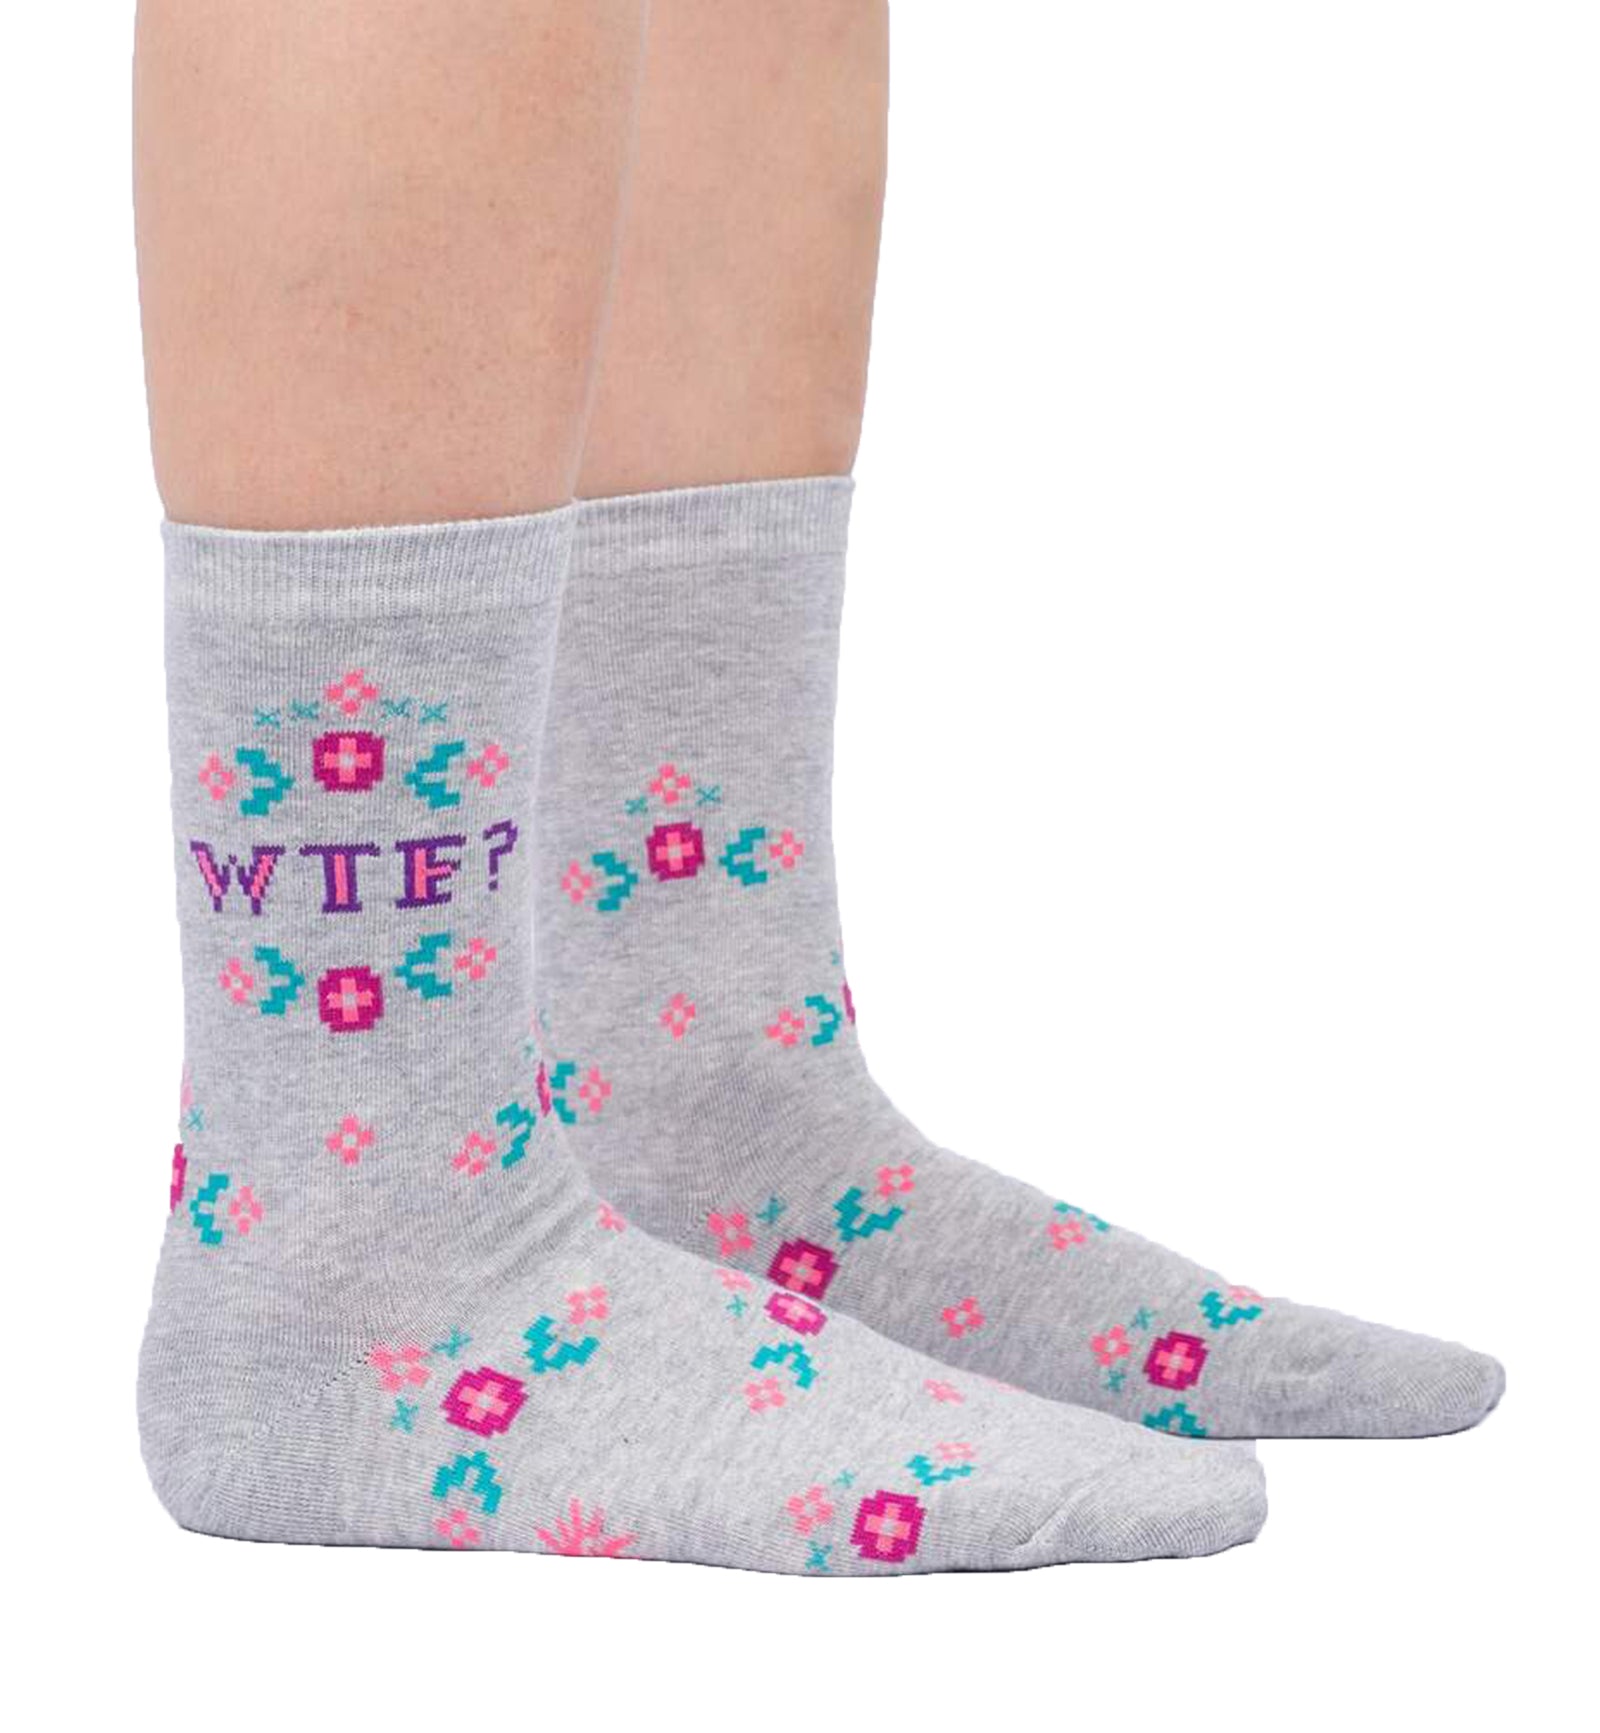 SOCK it to me Women's Crew Socks (W0445),WTF - WTF,One Size